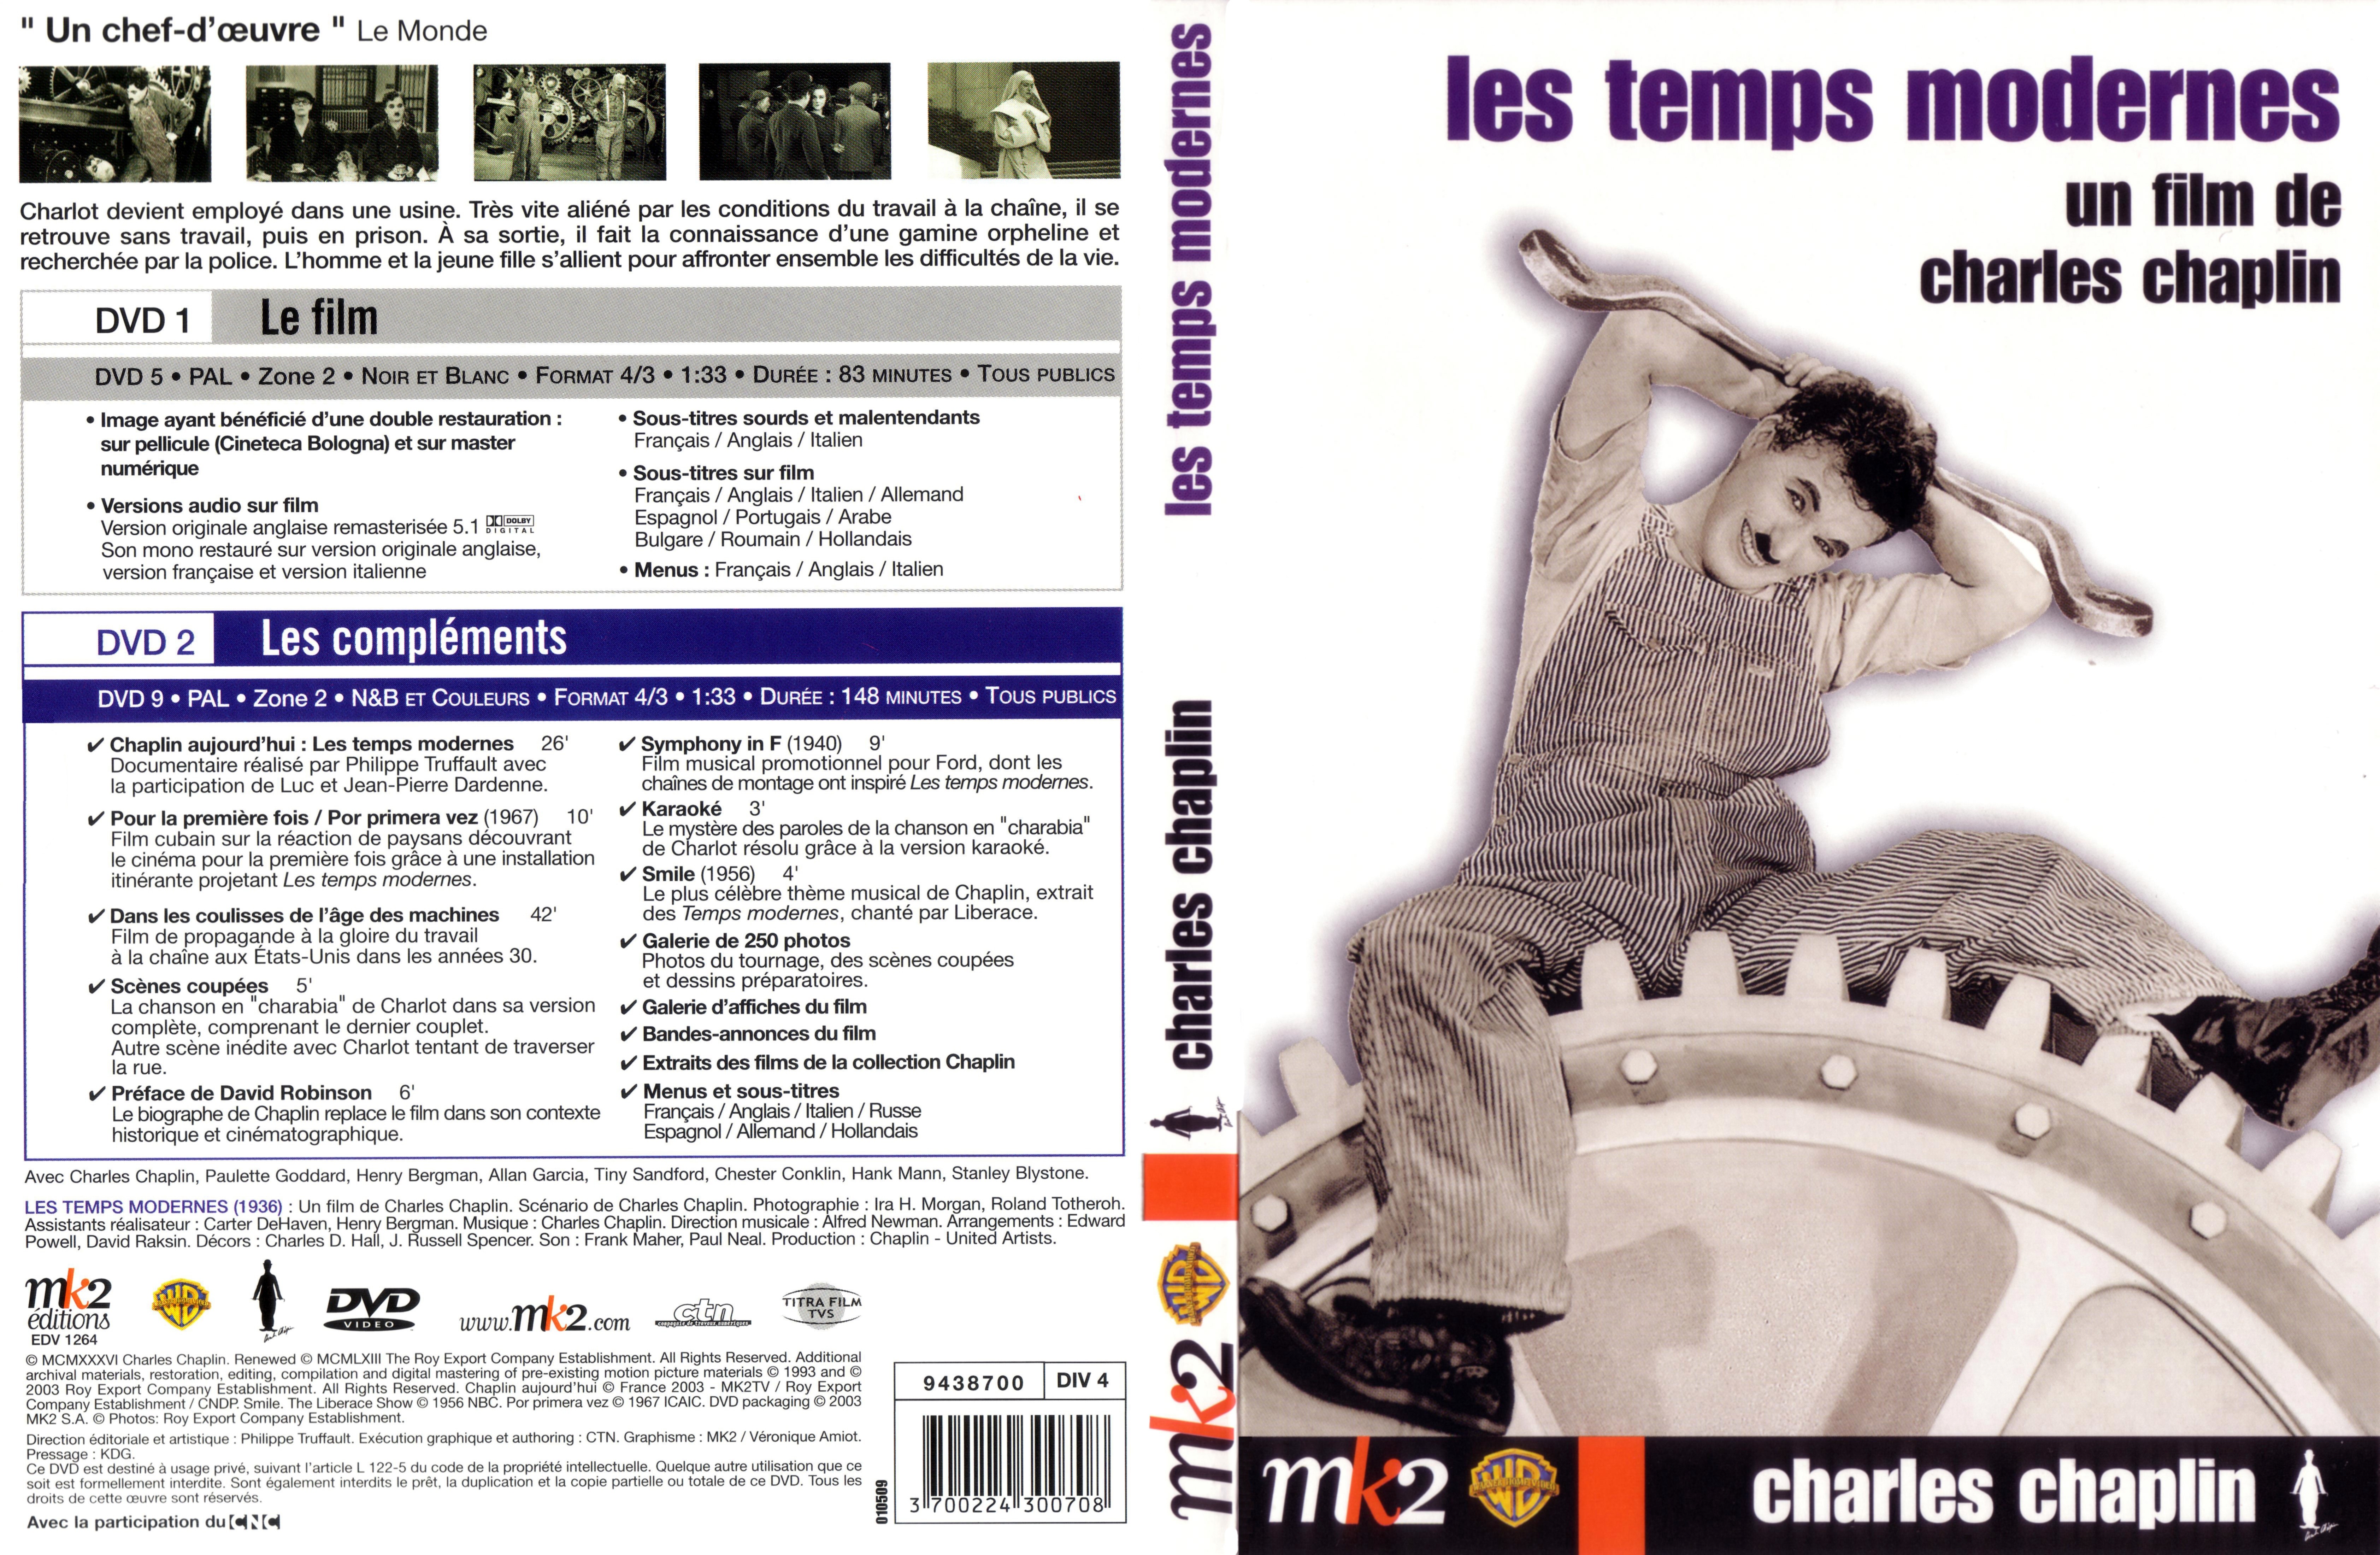 Jaquette DVD Les temps modernes v2